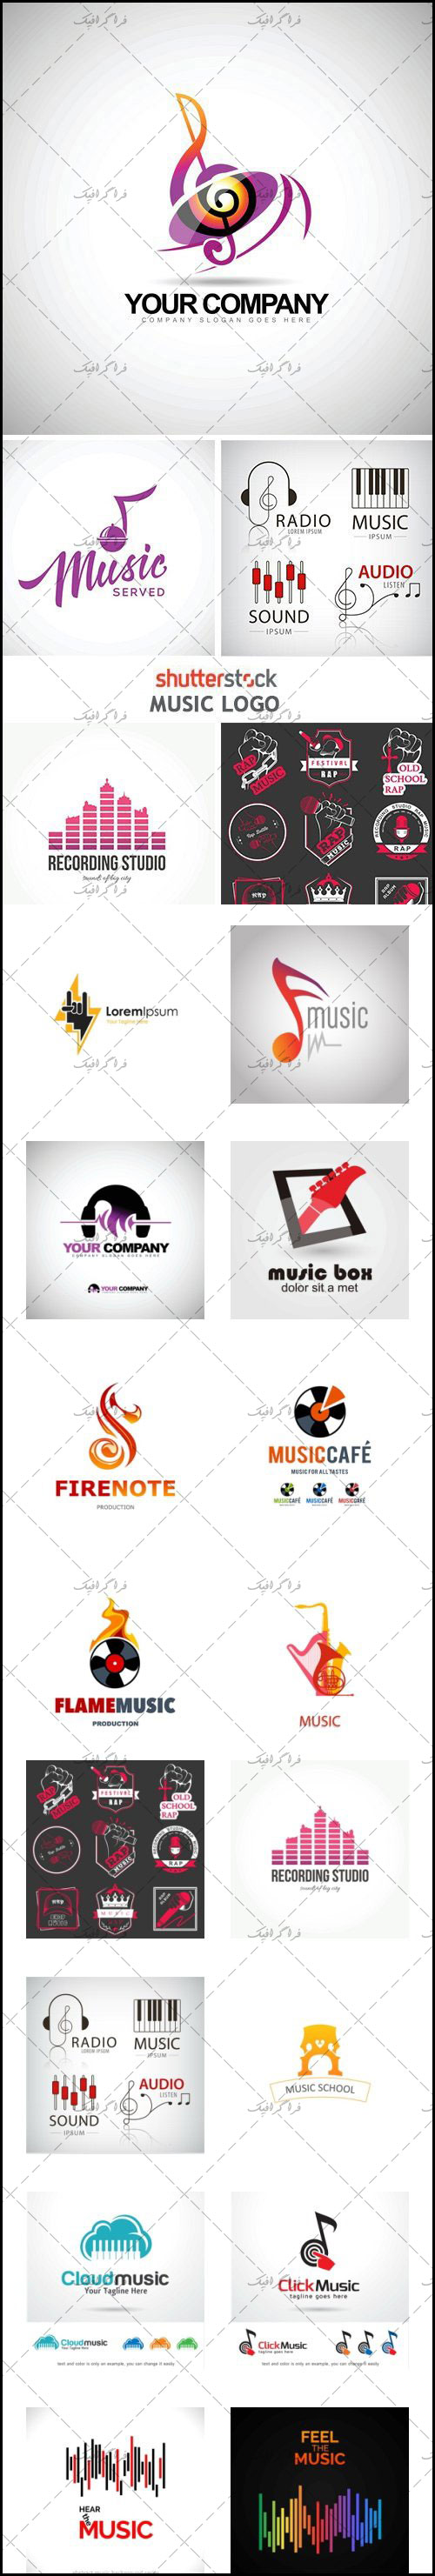 دانلود لوگو های موسیقی - Music Logos